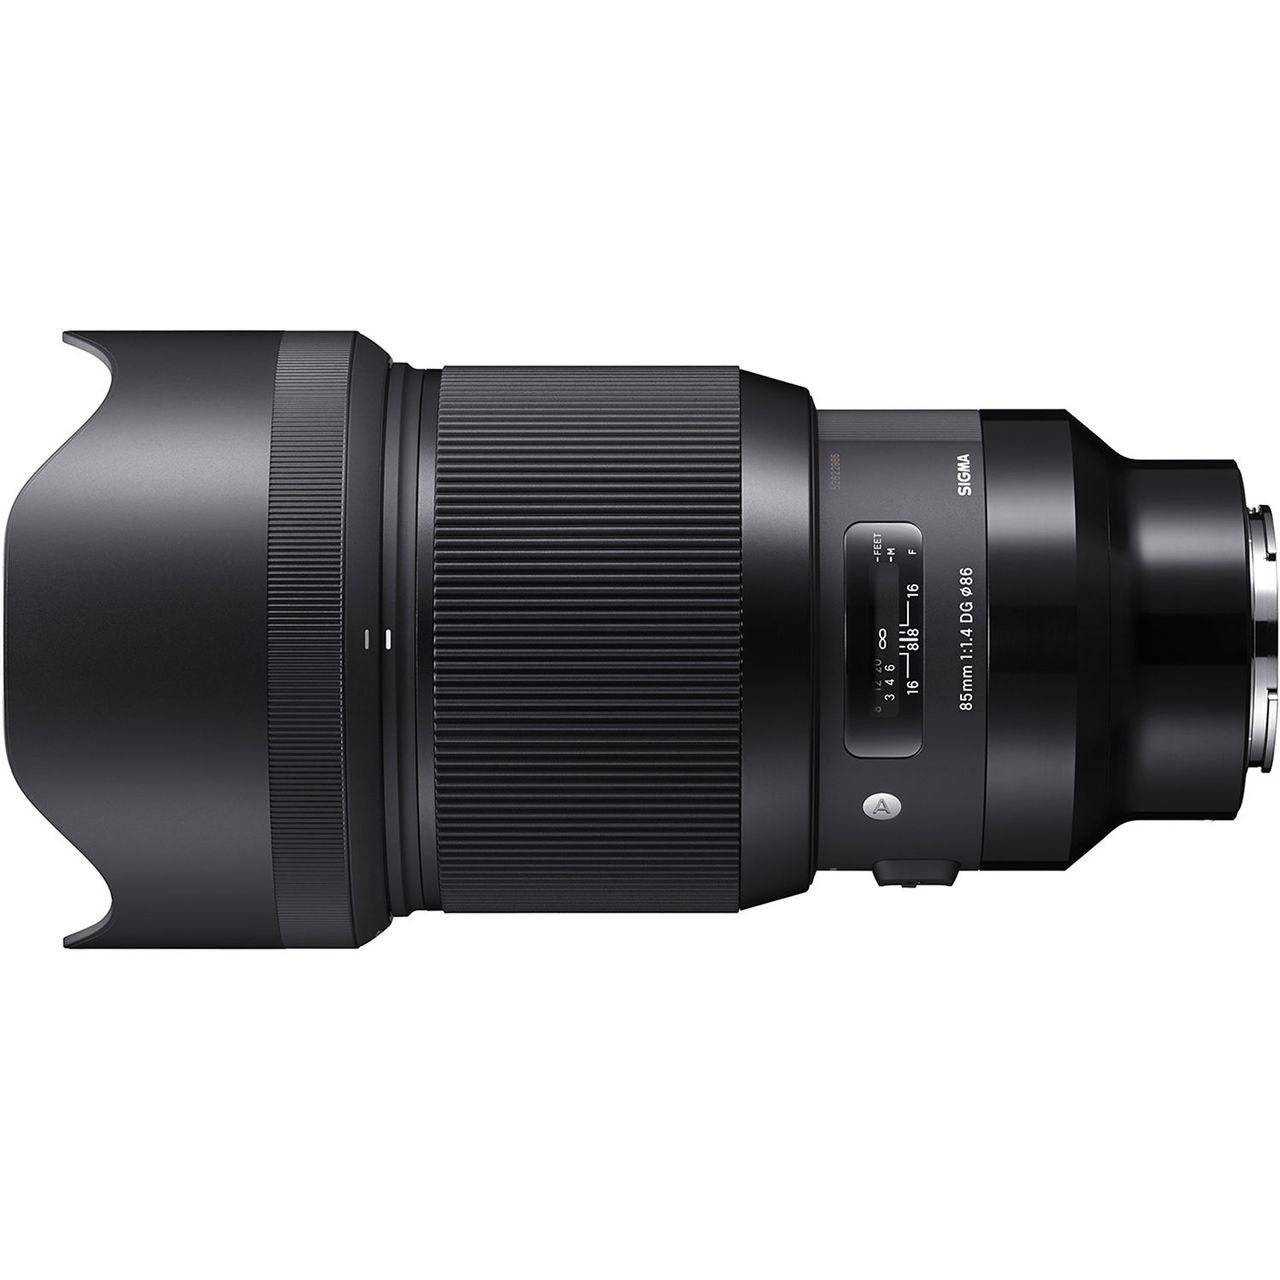 Sigma mm f.4 DG HSM Art Lens for Sony E A7 & A9 at Acephoto.net